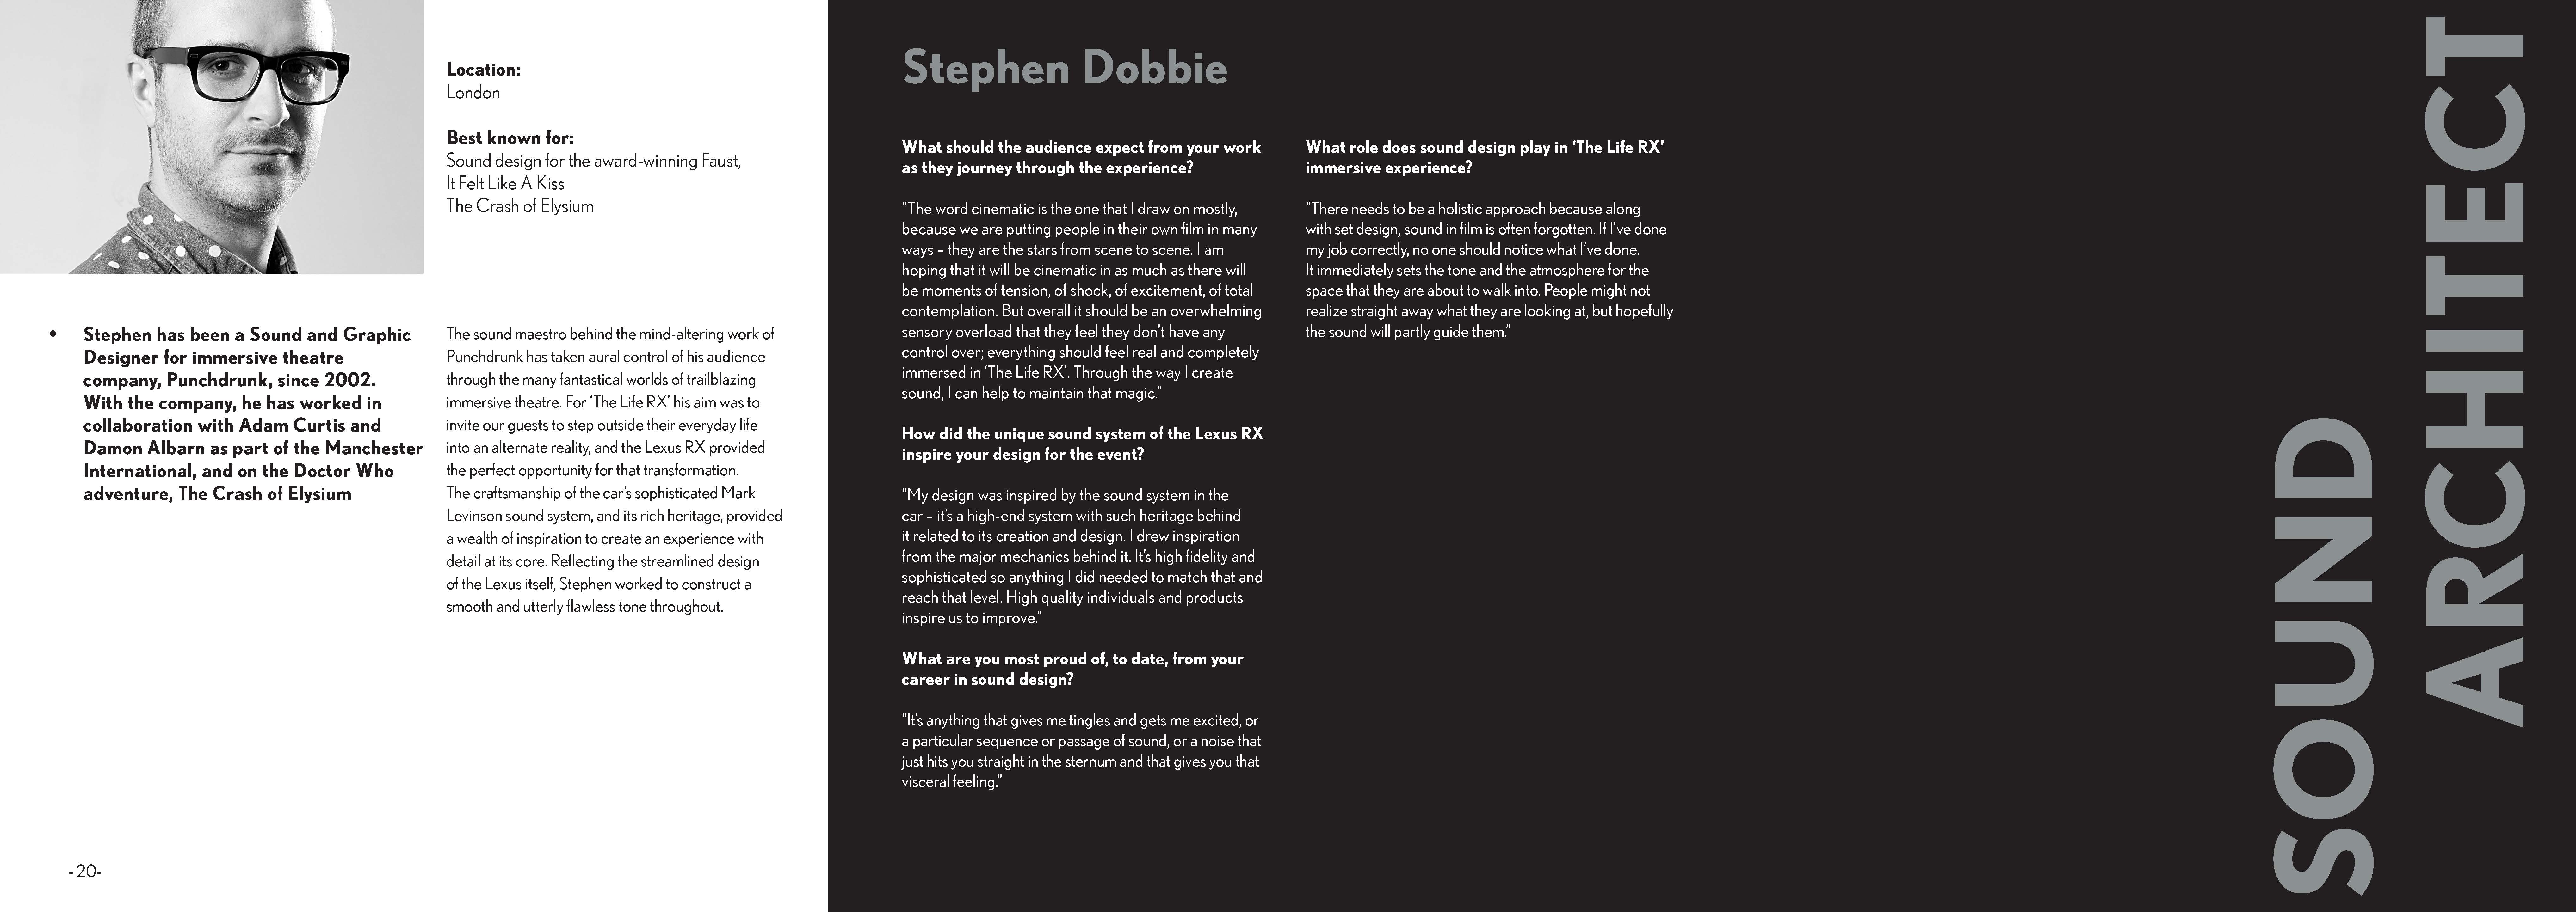 06 Stephen Dobbie